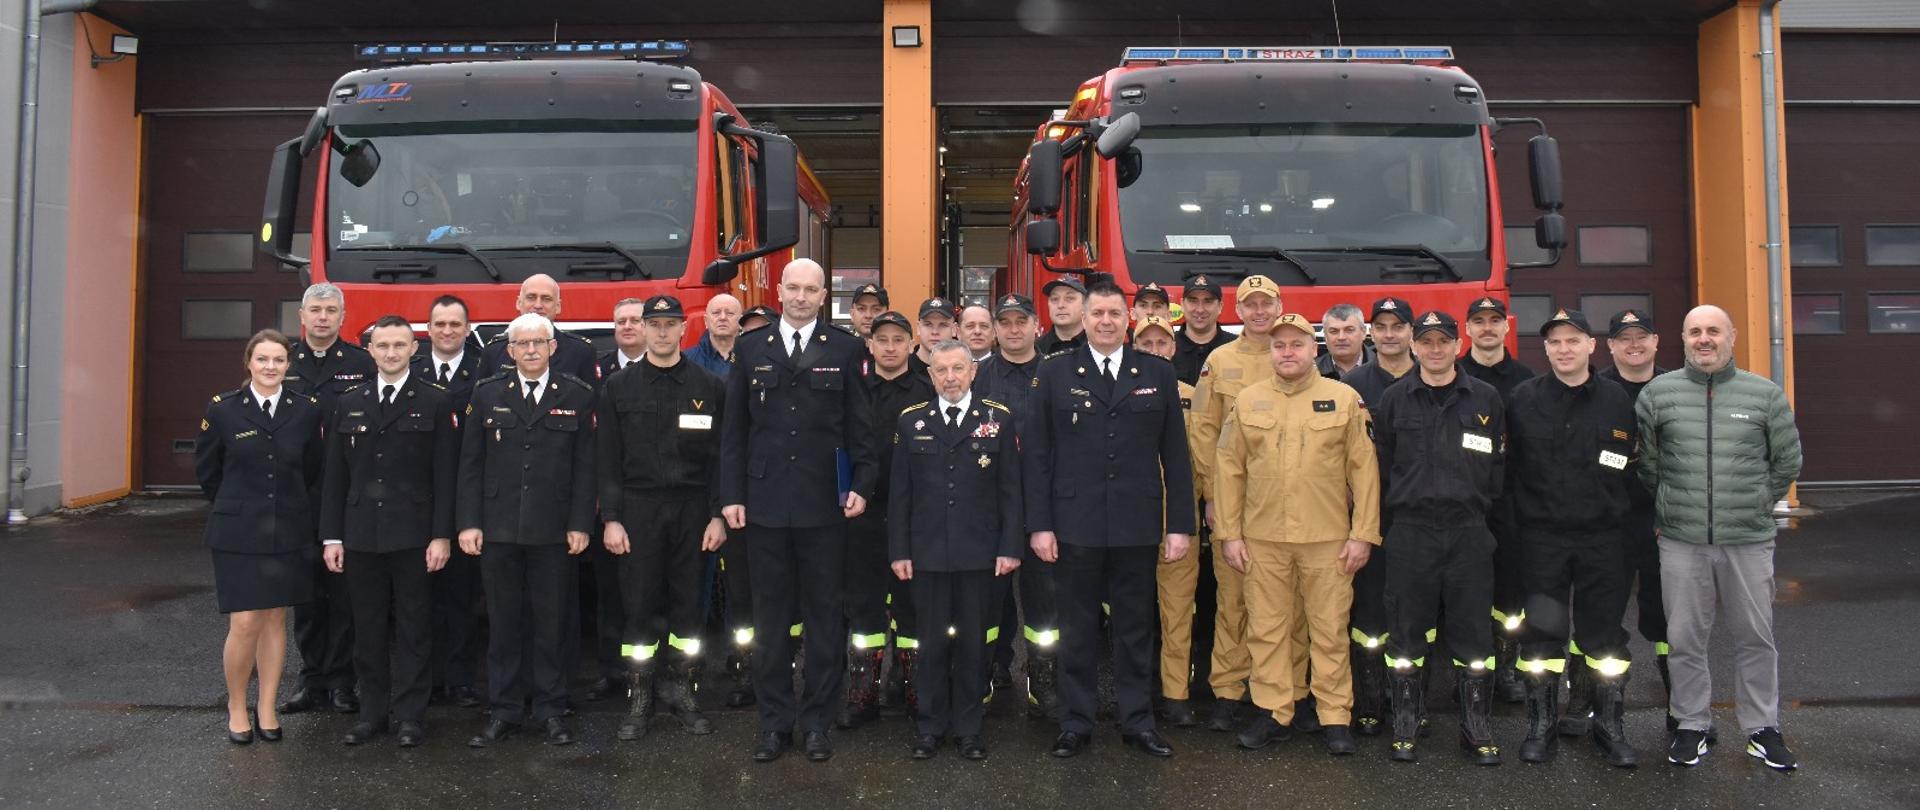 Na fotografii widać funkcjonariuszy Państwowej Straży Pożarnej na tle pojazdów pożarniczych i Jednostki Ratowniczo-Gaśniczej PSP w Jelczu-Laskowicach.